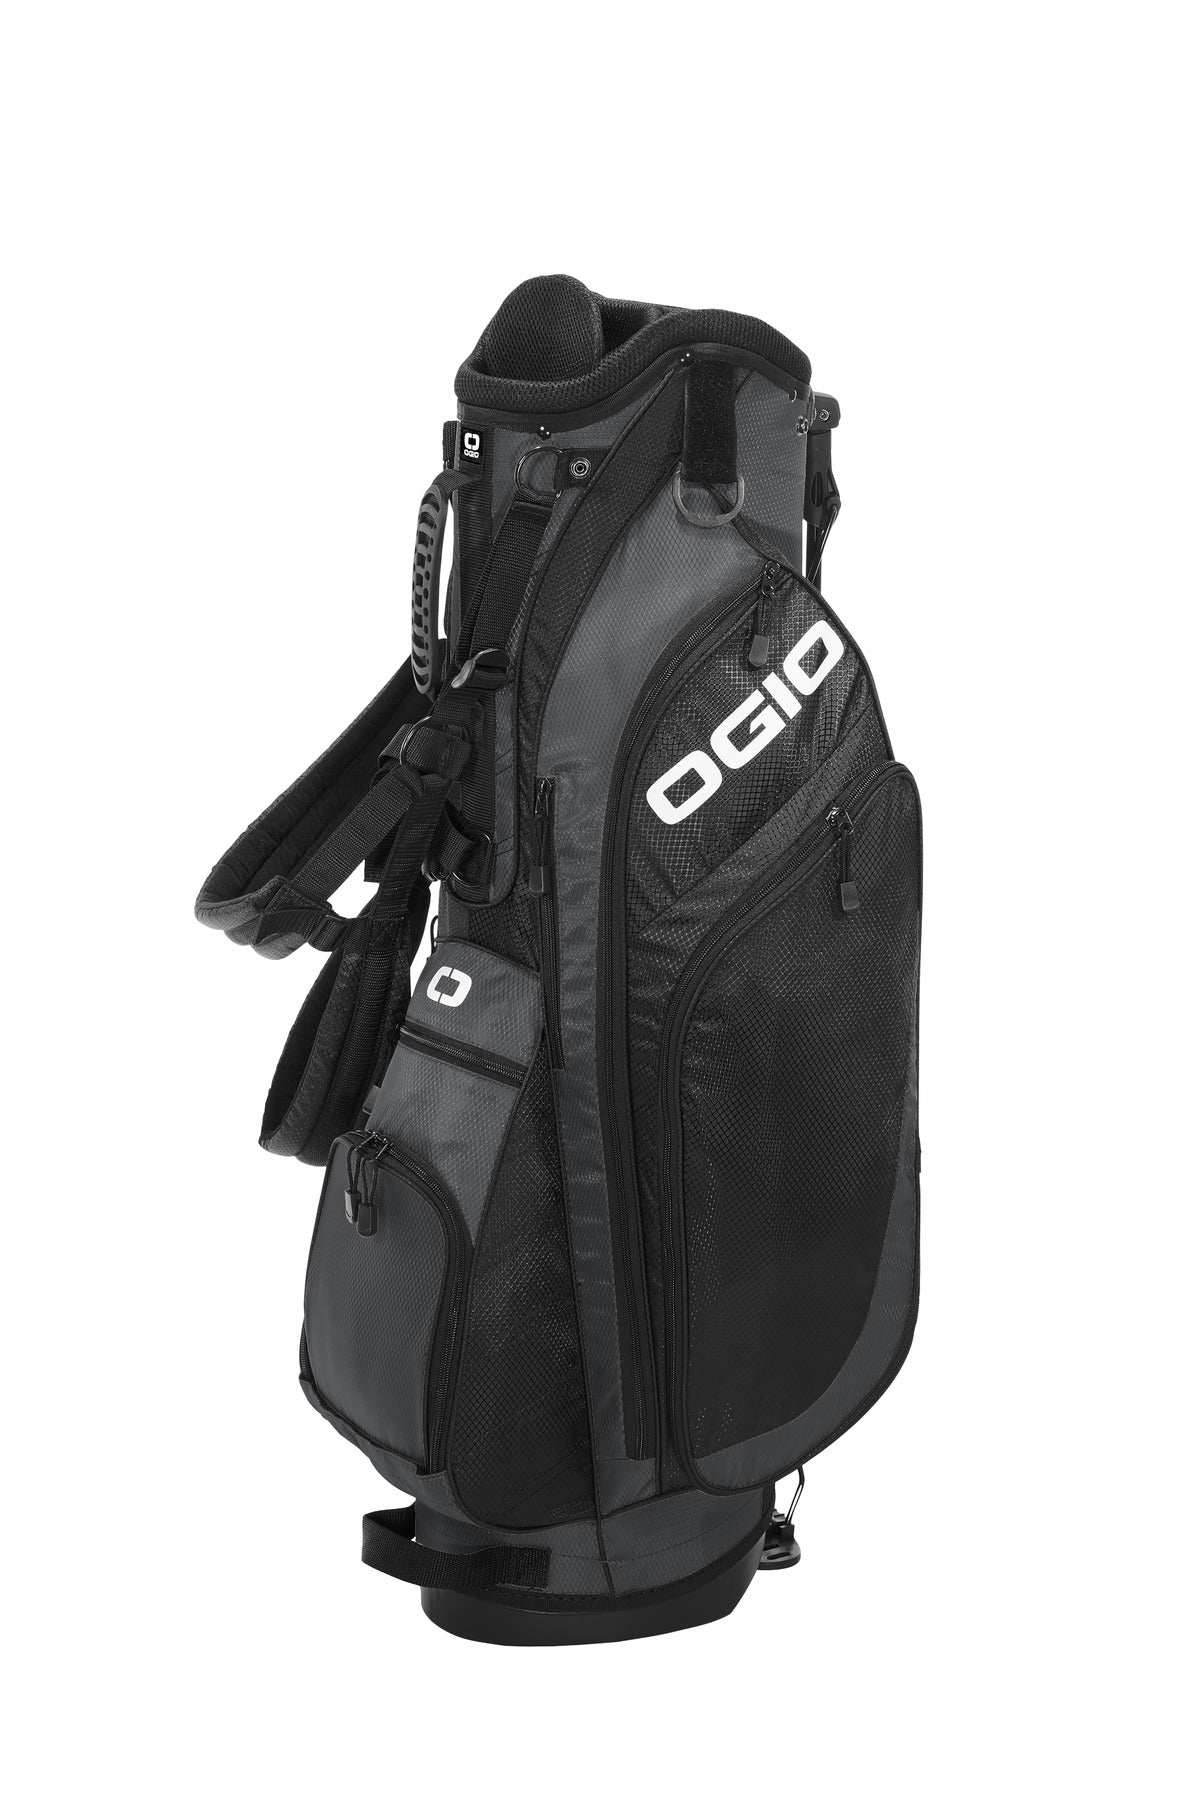 OGIO ® XL (Xtra-Light) 2.0 Golf Bag. 425043 - DFW Impression